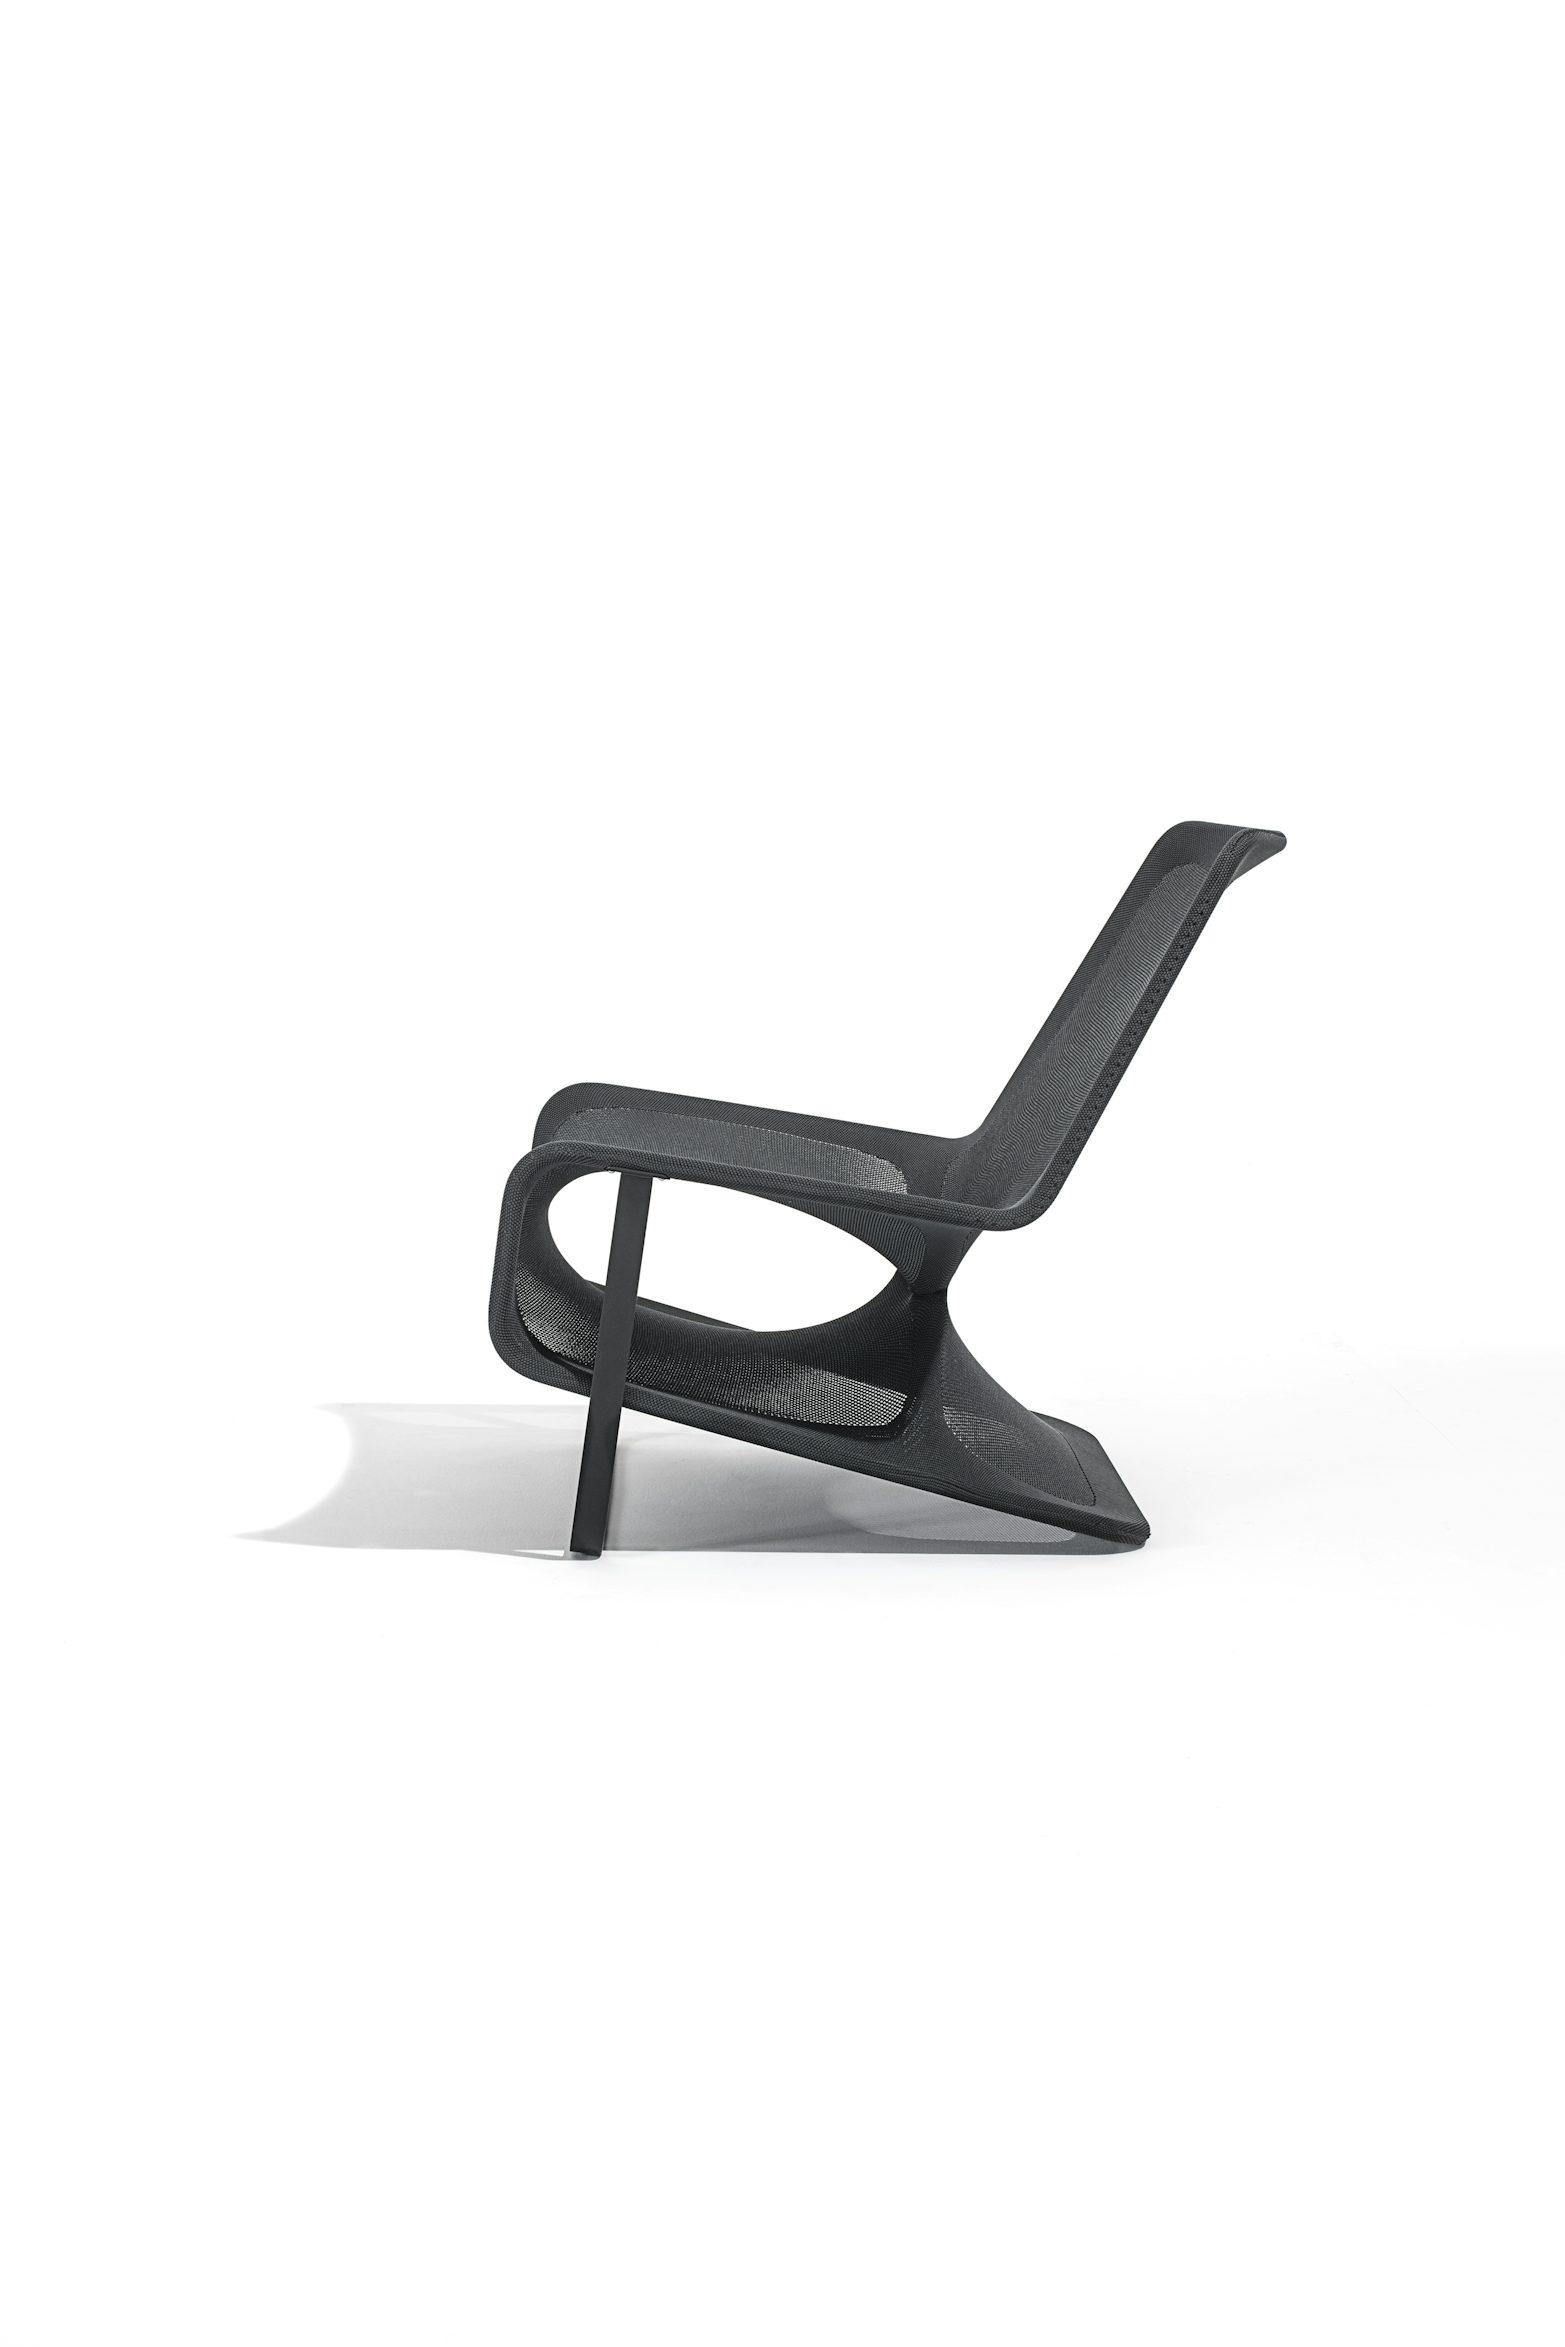 Aria Lounge Chair Atelier oi Desalto 10